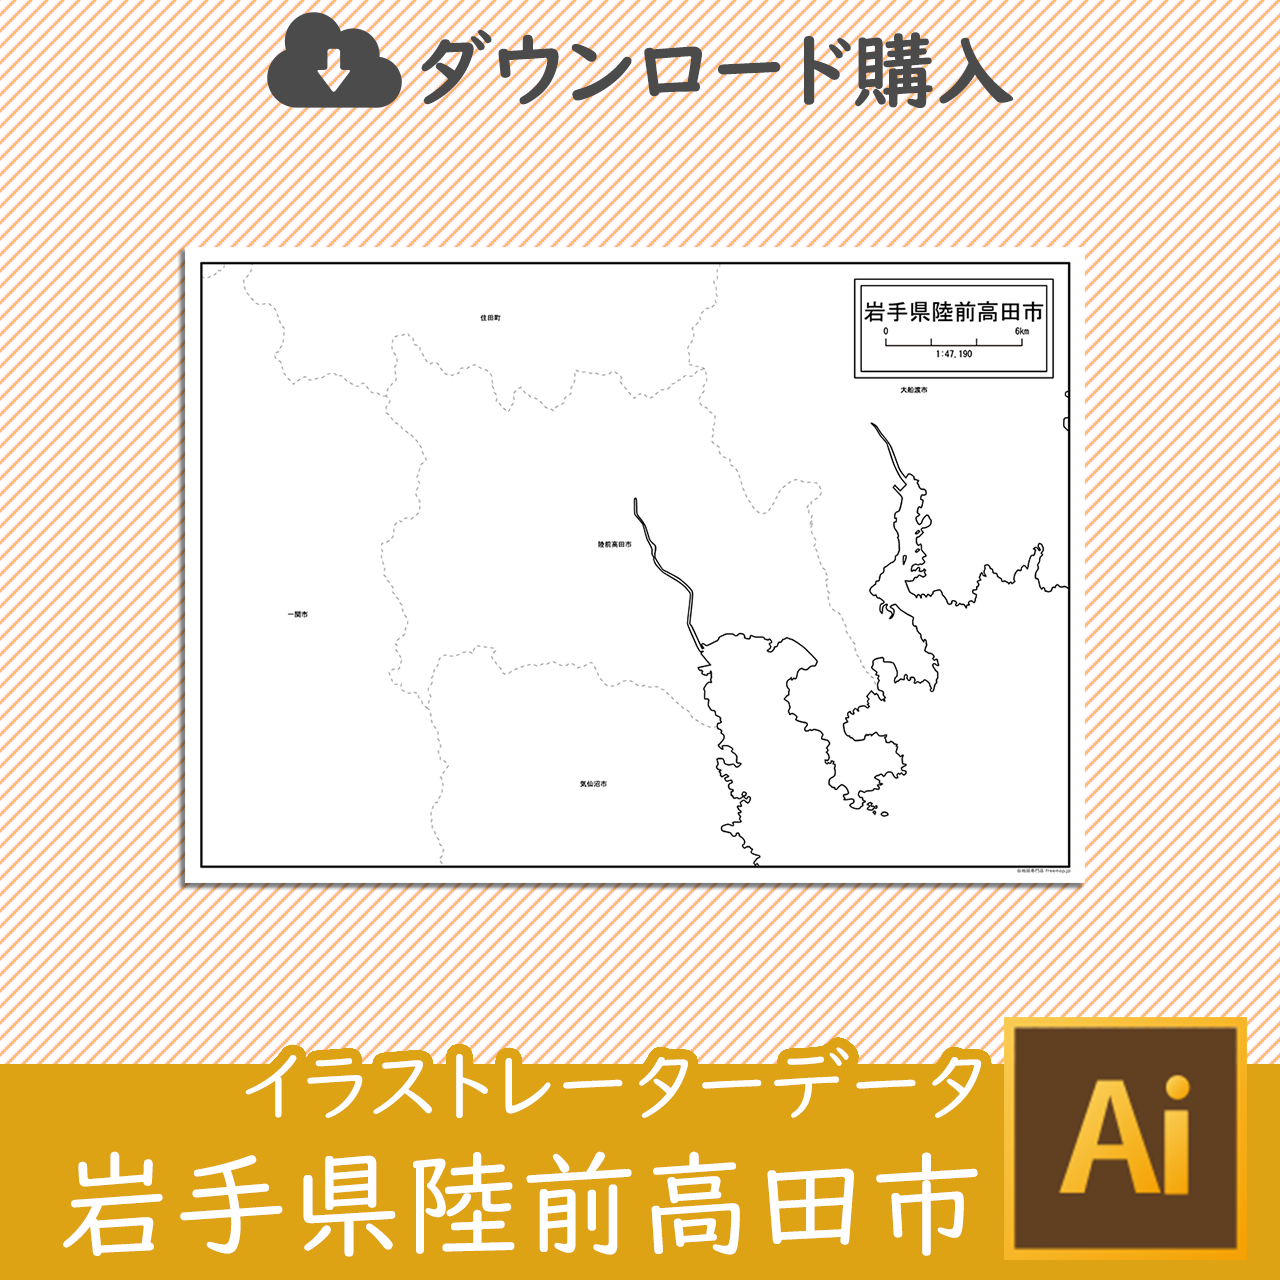 陸前高田市のサムネイル画像